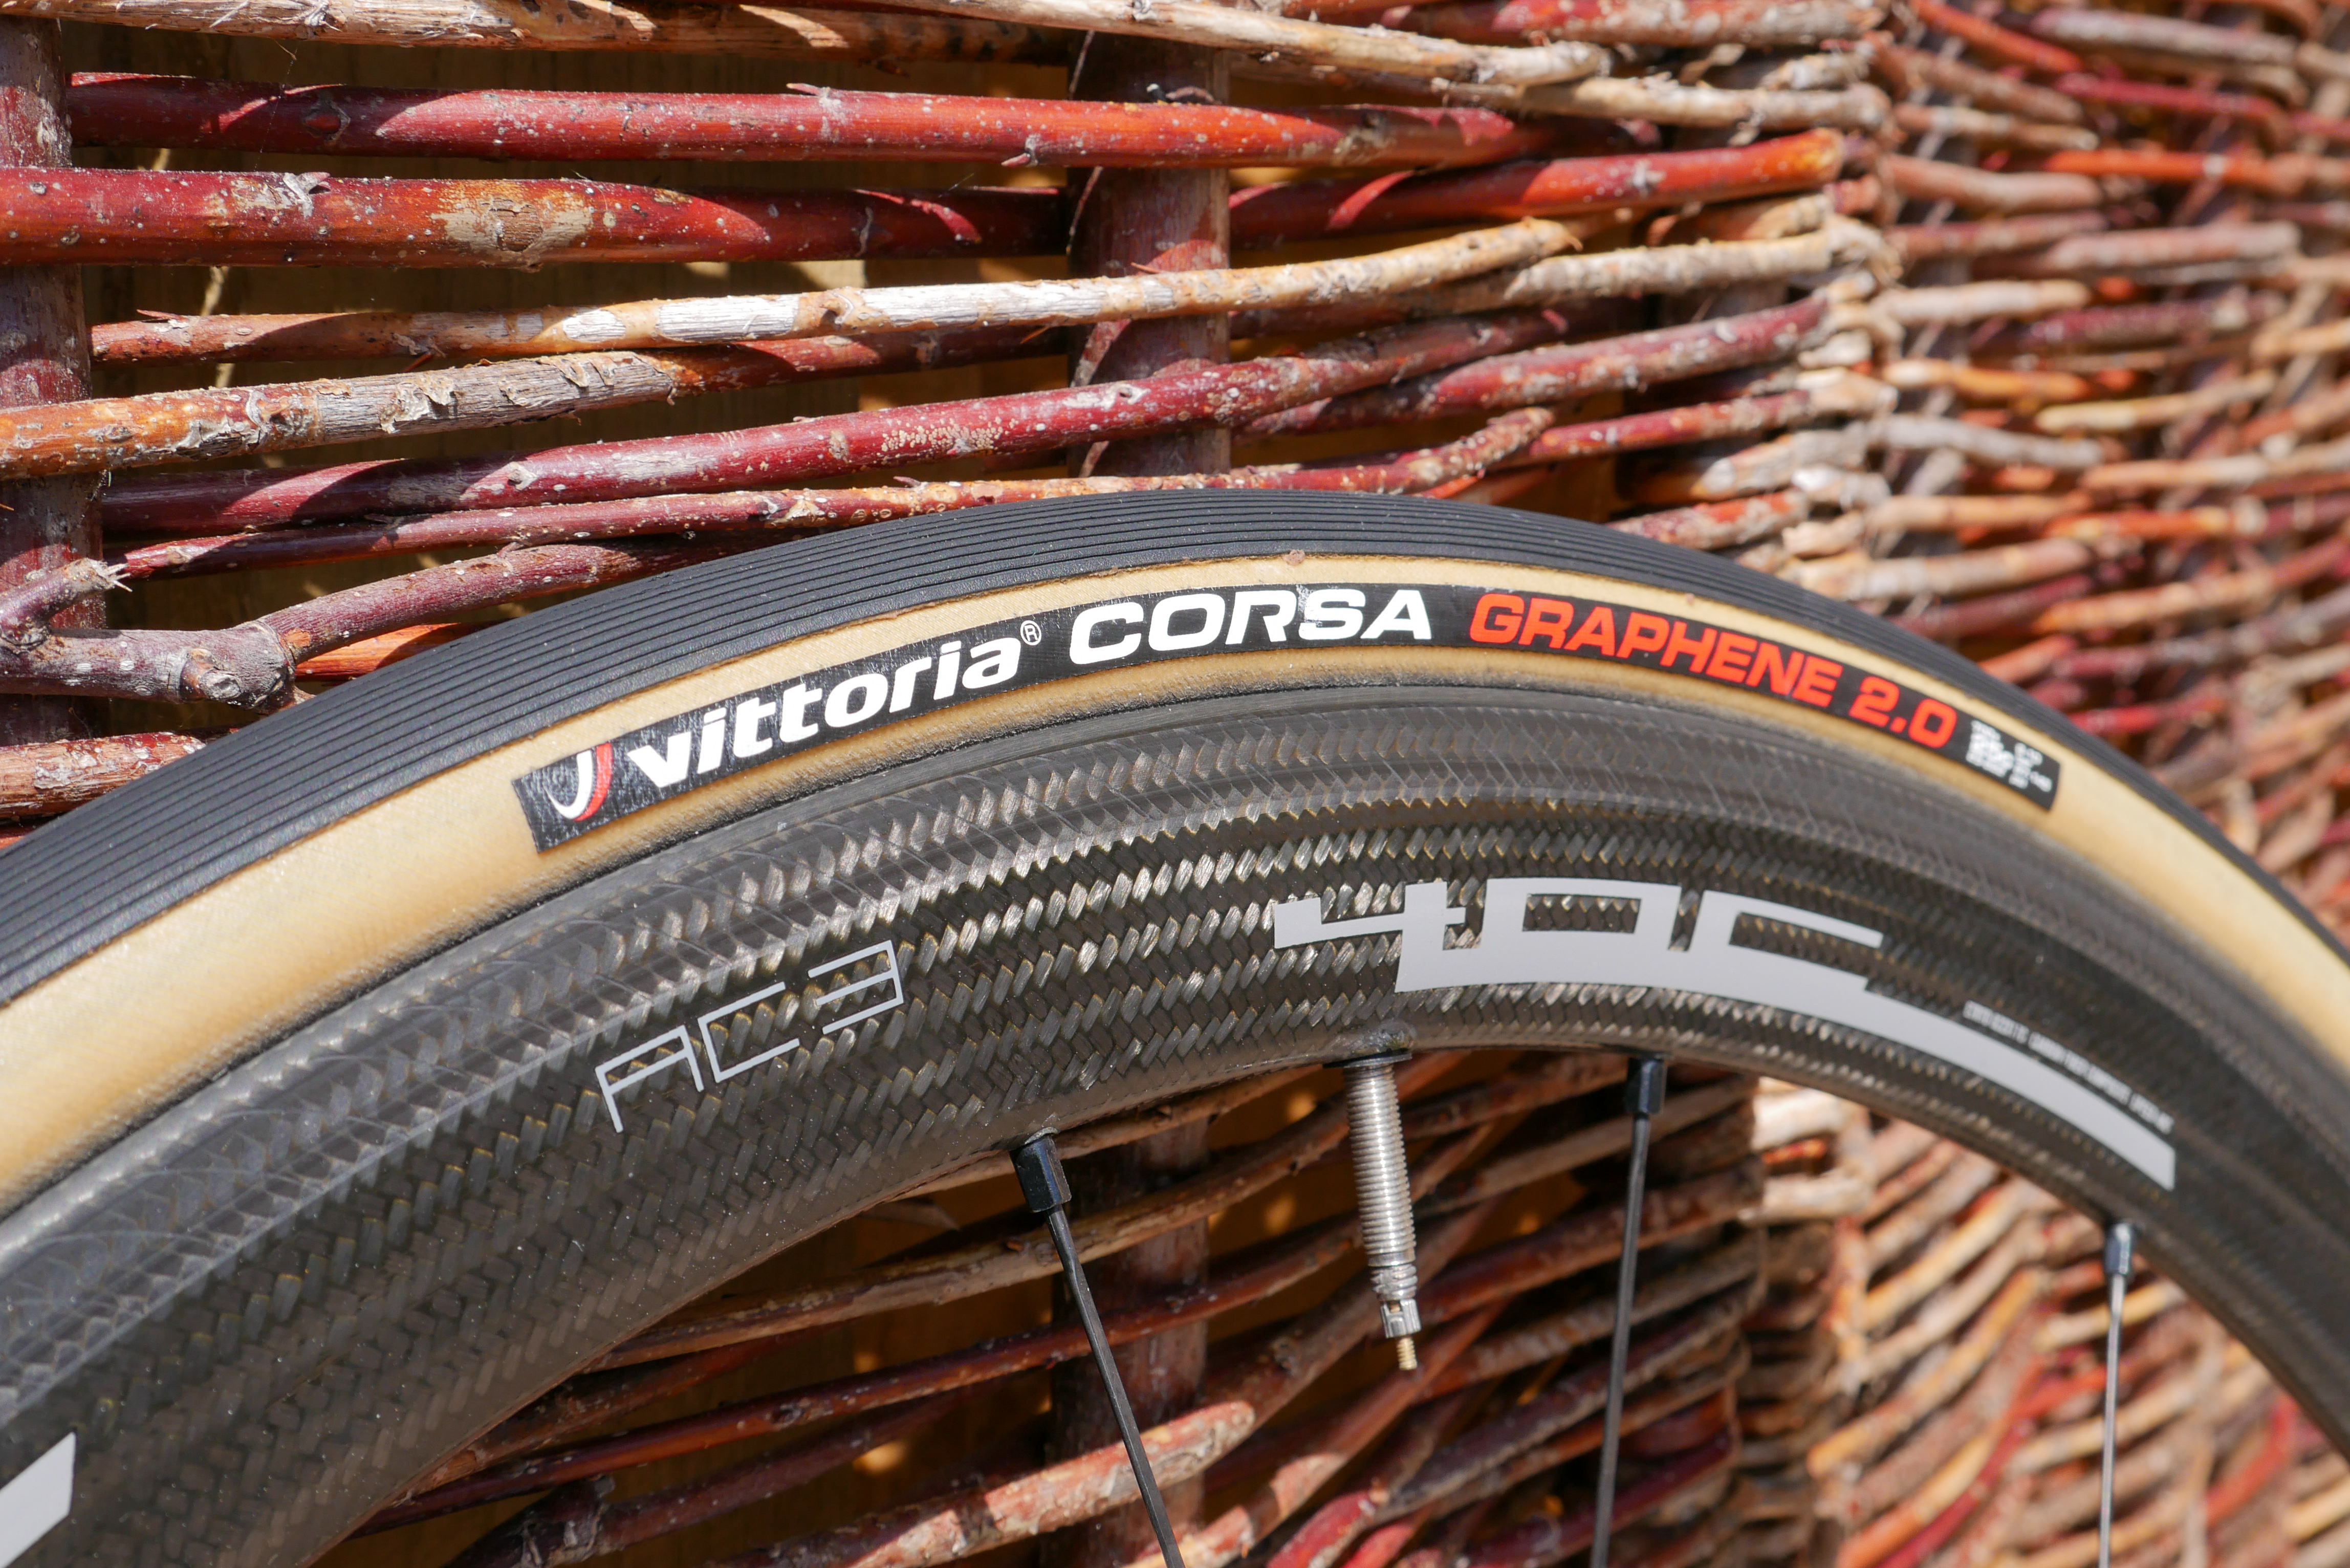 wet weather road bike tyres